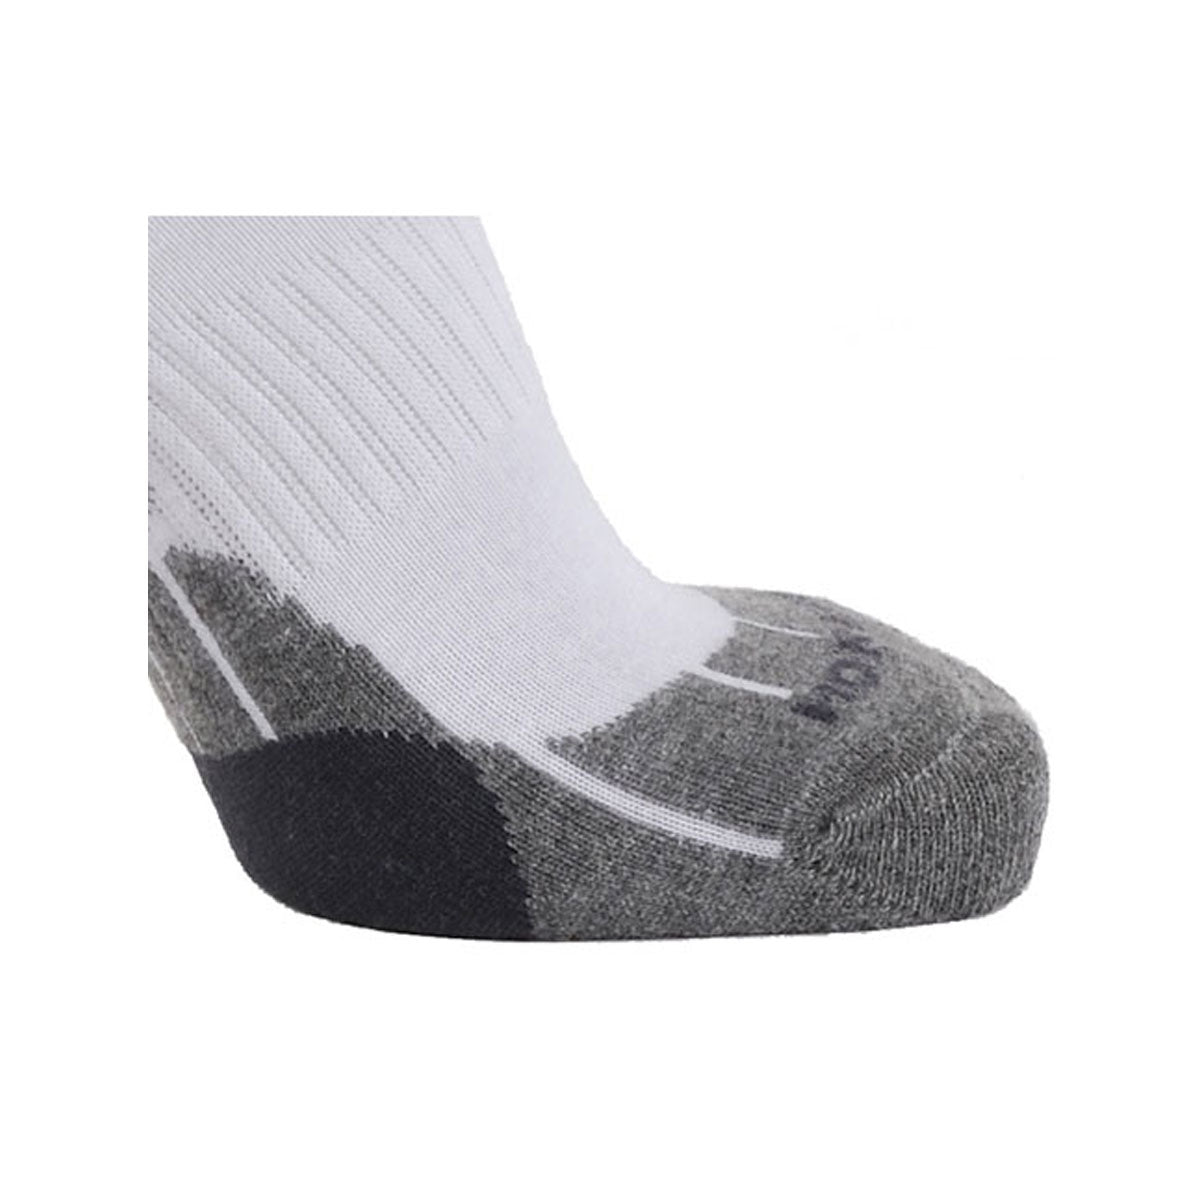 Technical Sport Quarter Socks - White/Grey/Charcoal 2